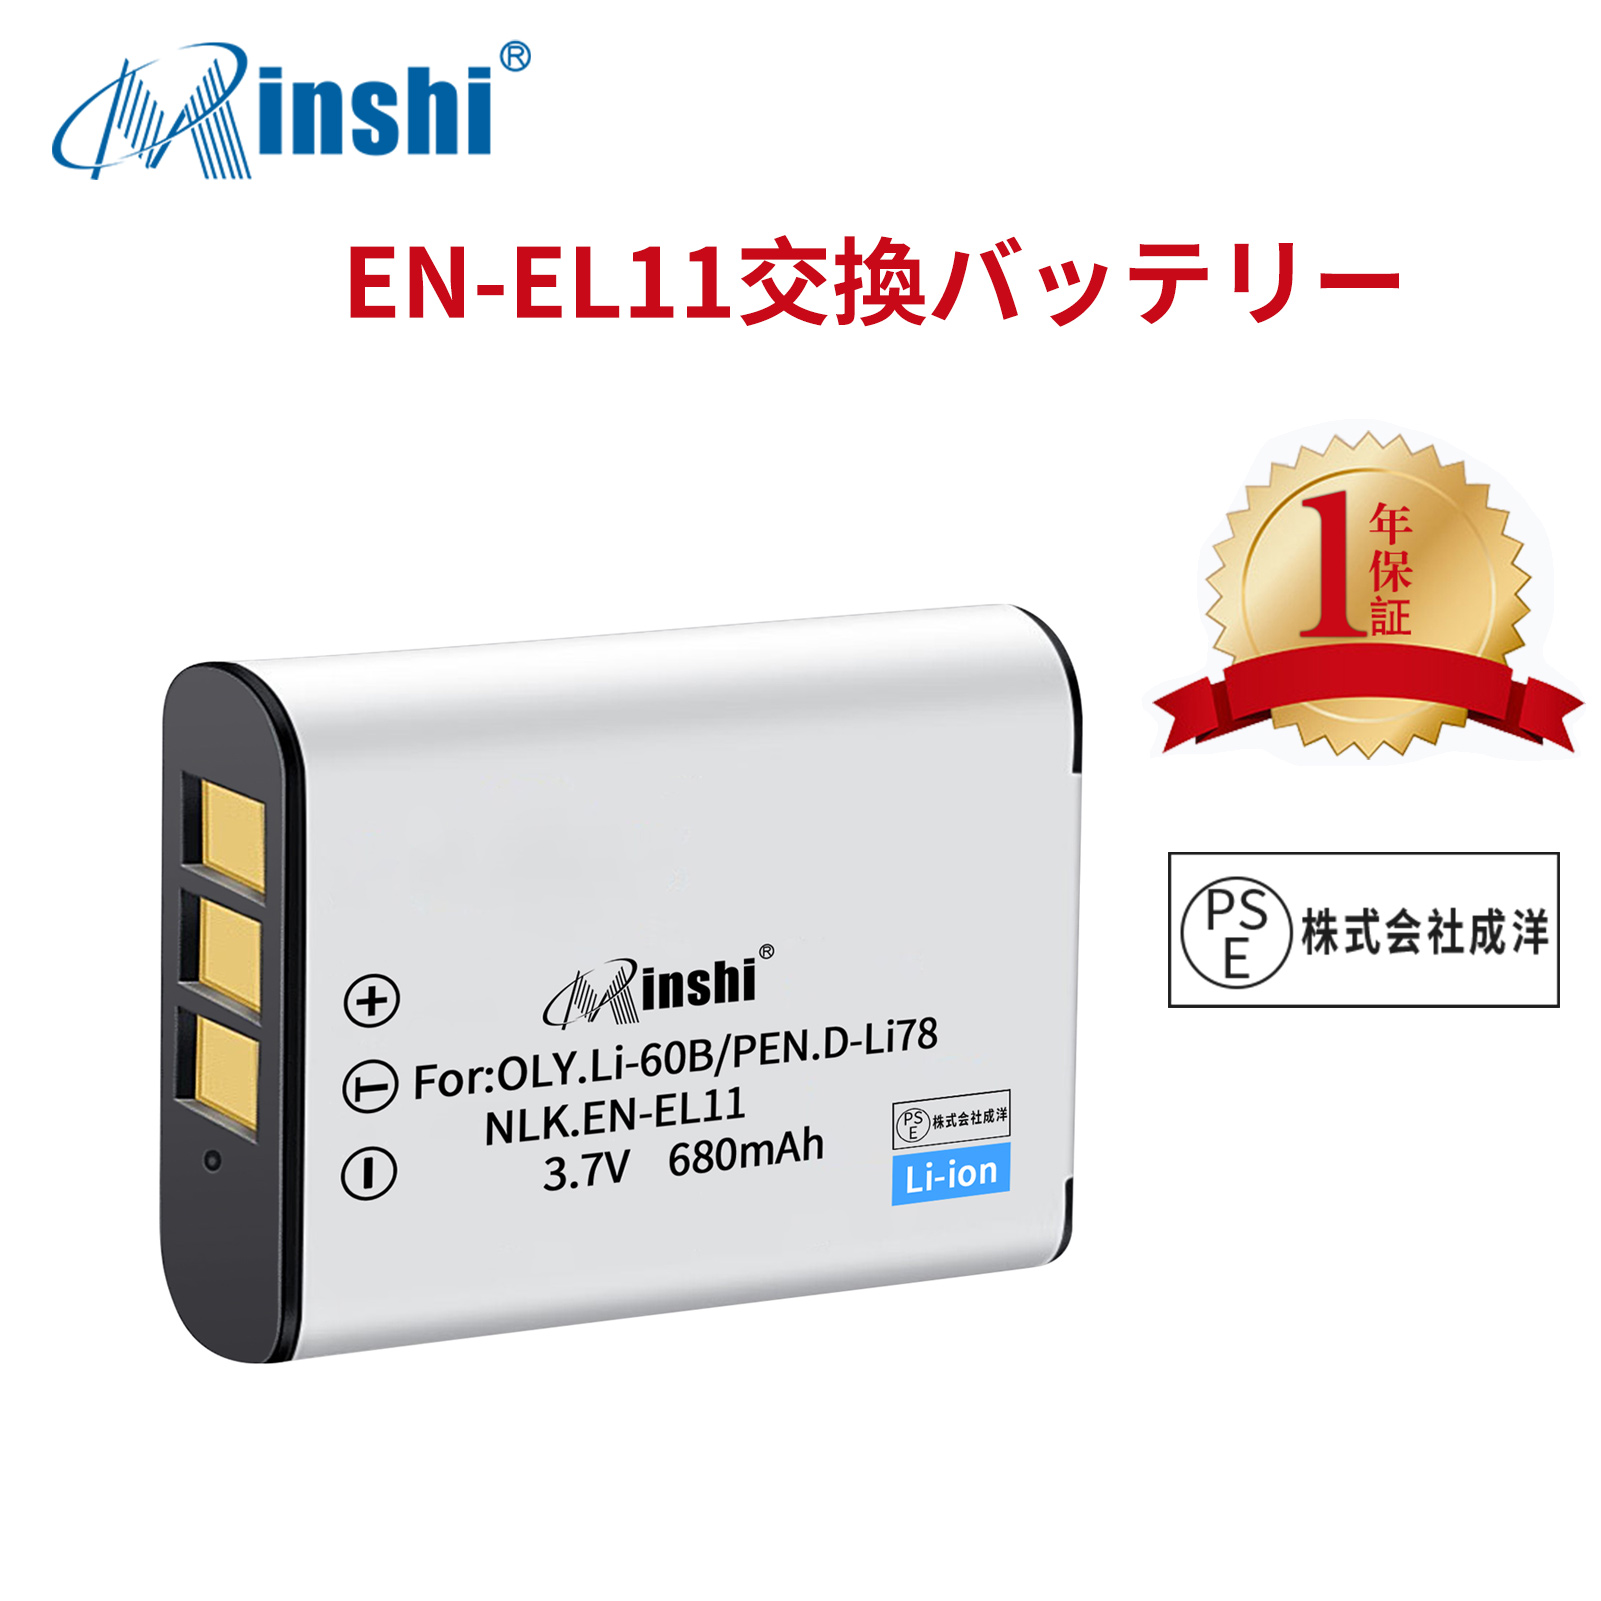 【1年保証】minshi NIKON Optio W60 EN-EL11 【680mAh 3.7V】PSE認定済 高品質交換用バッテリー オリジナル充電器との互換性がない